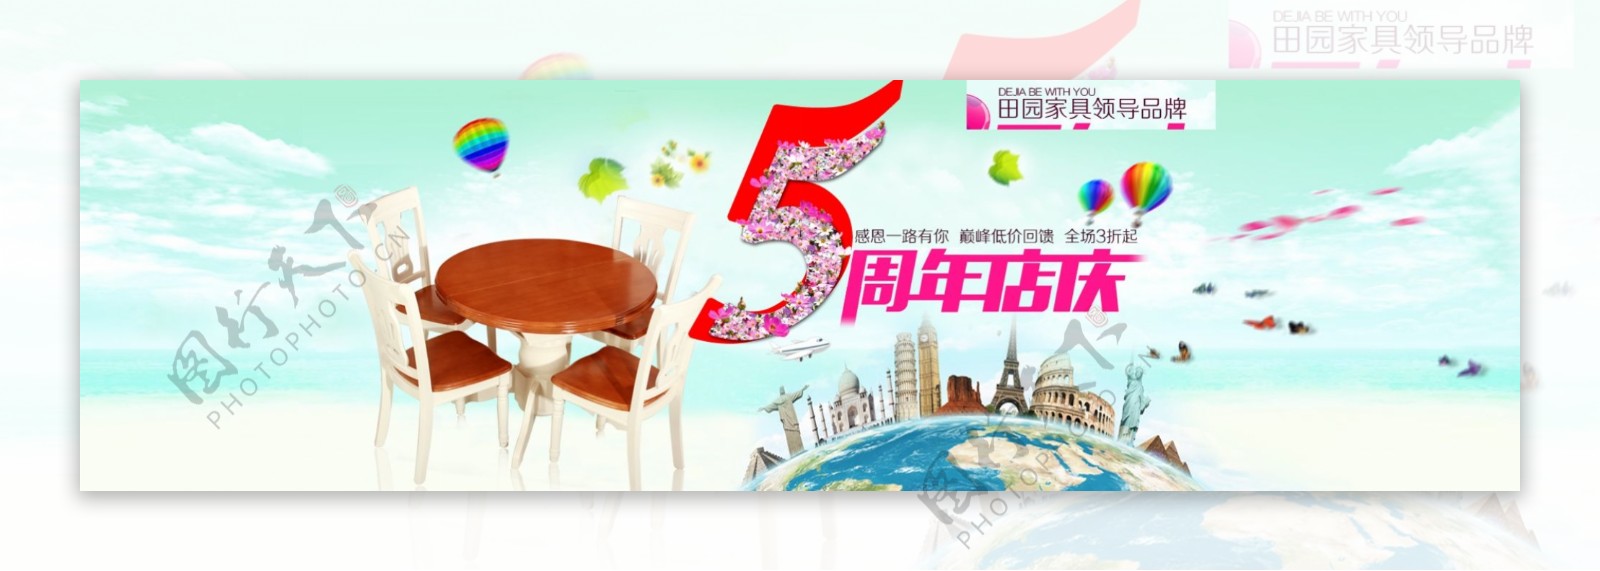 淘宝店5周年庆海报设计PSD素材